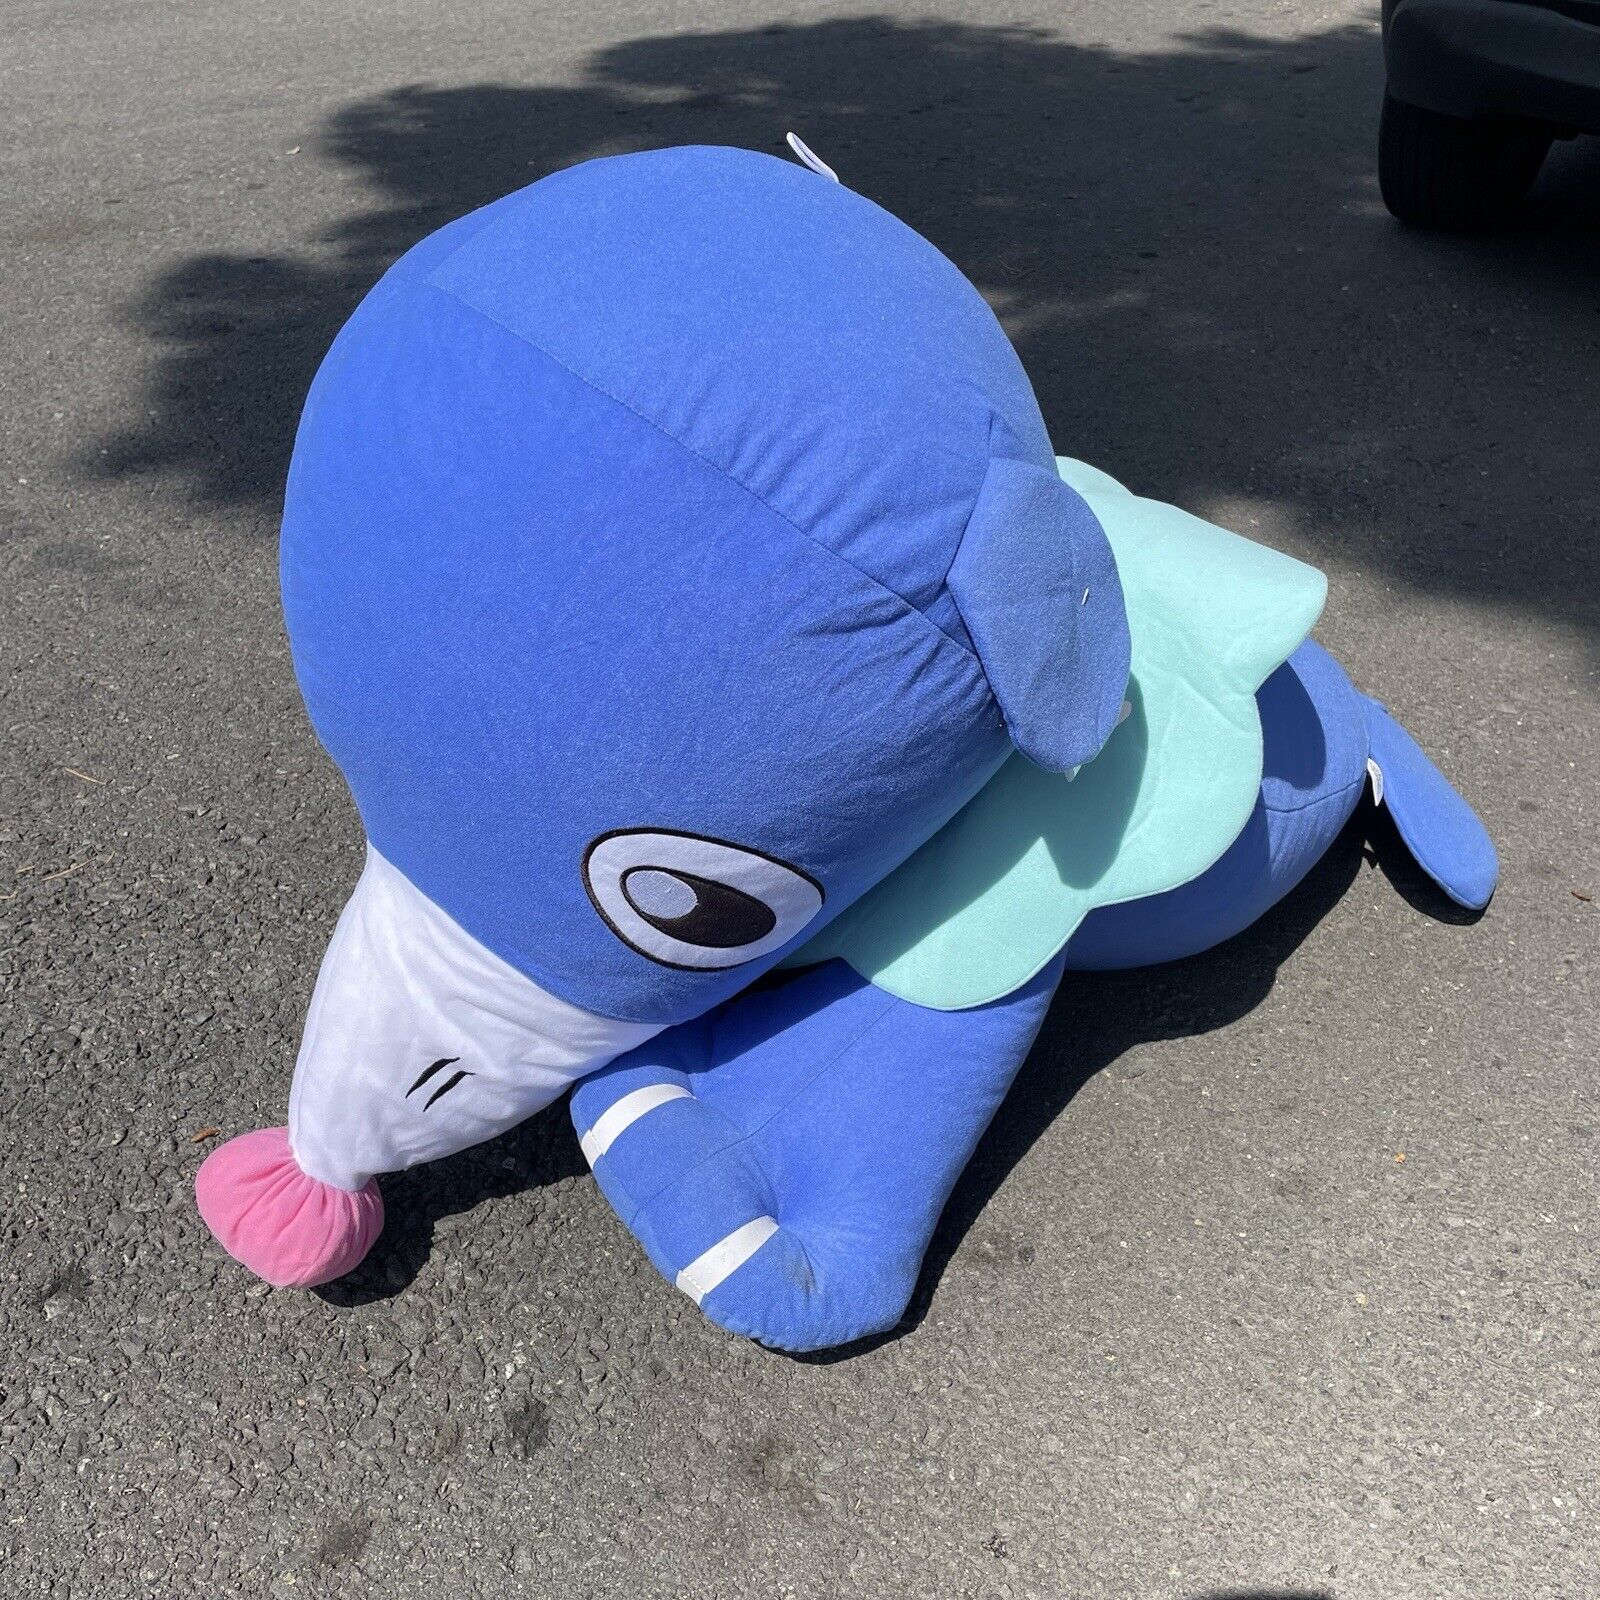 Popplio Pokémon 45” Inch Plush New 2019